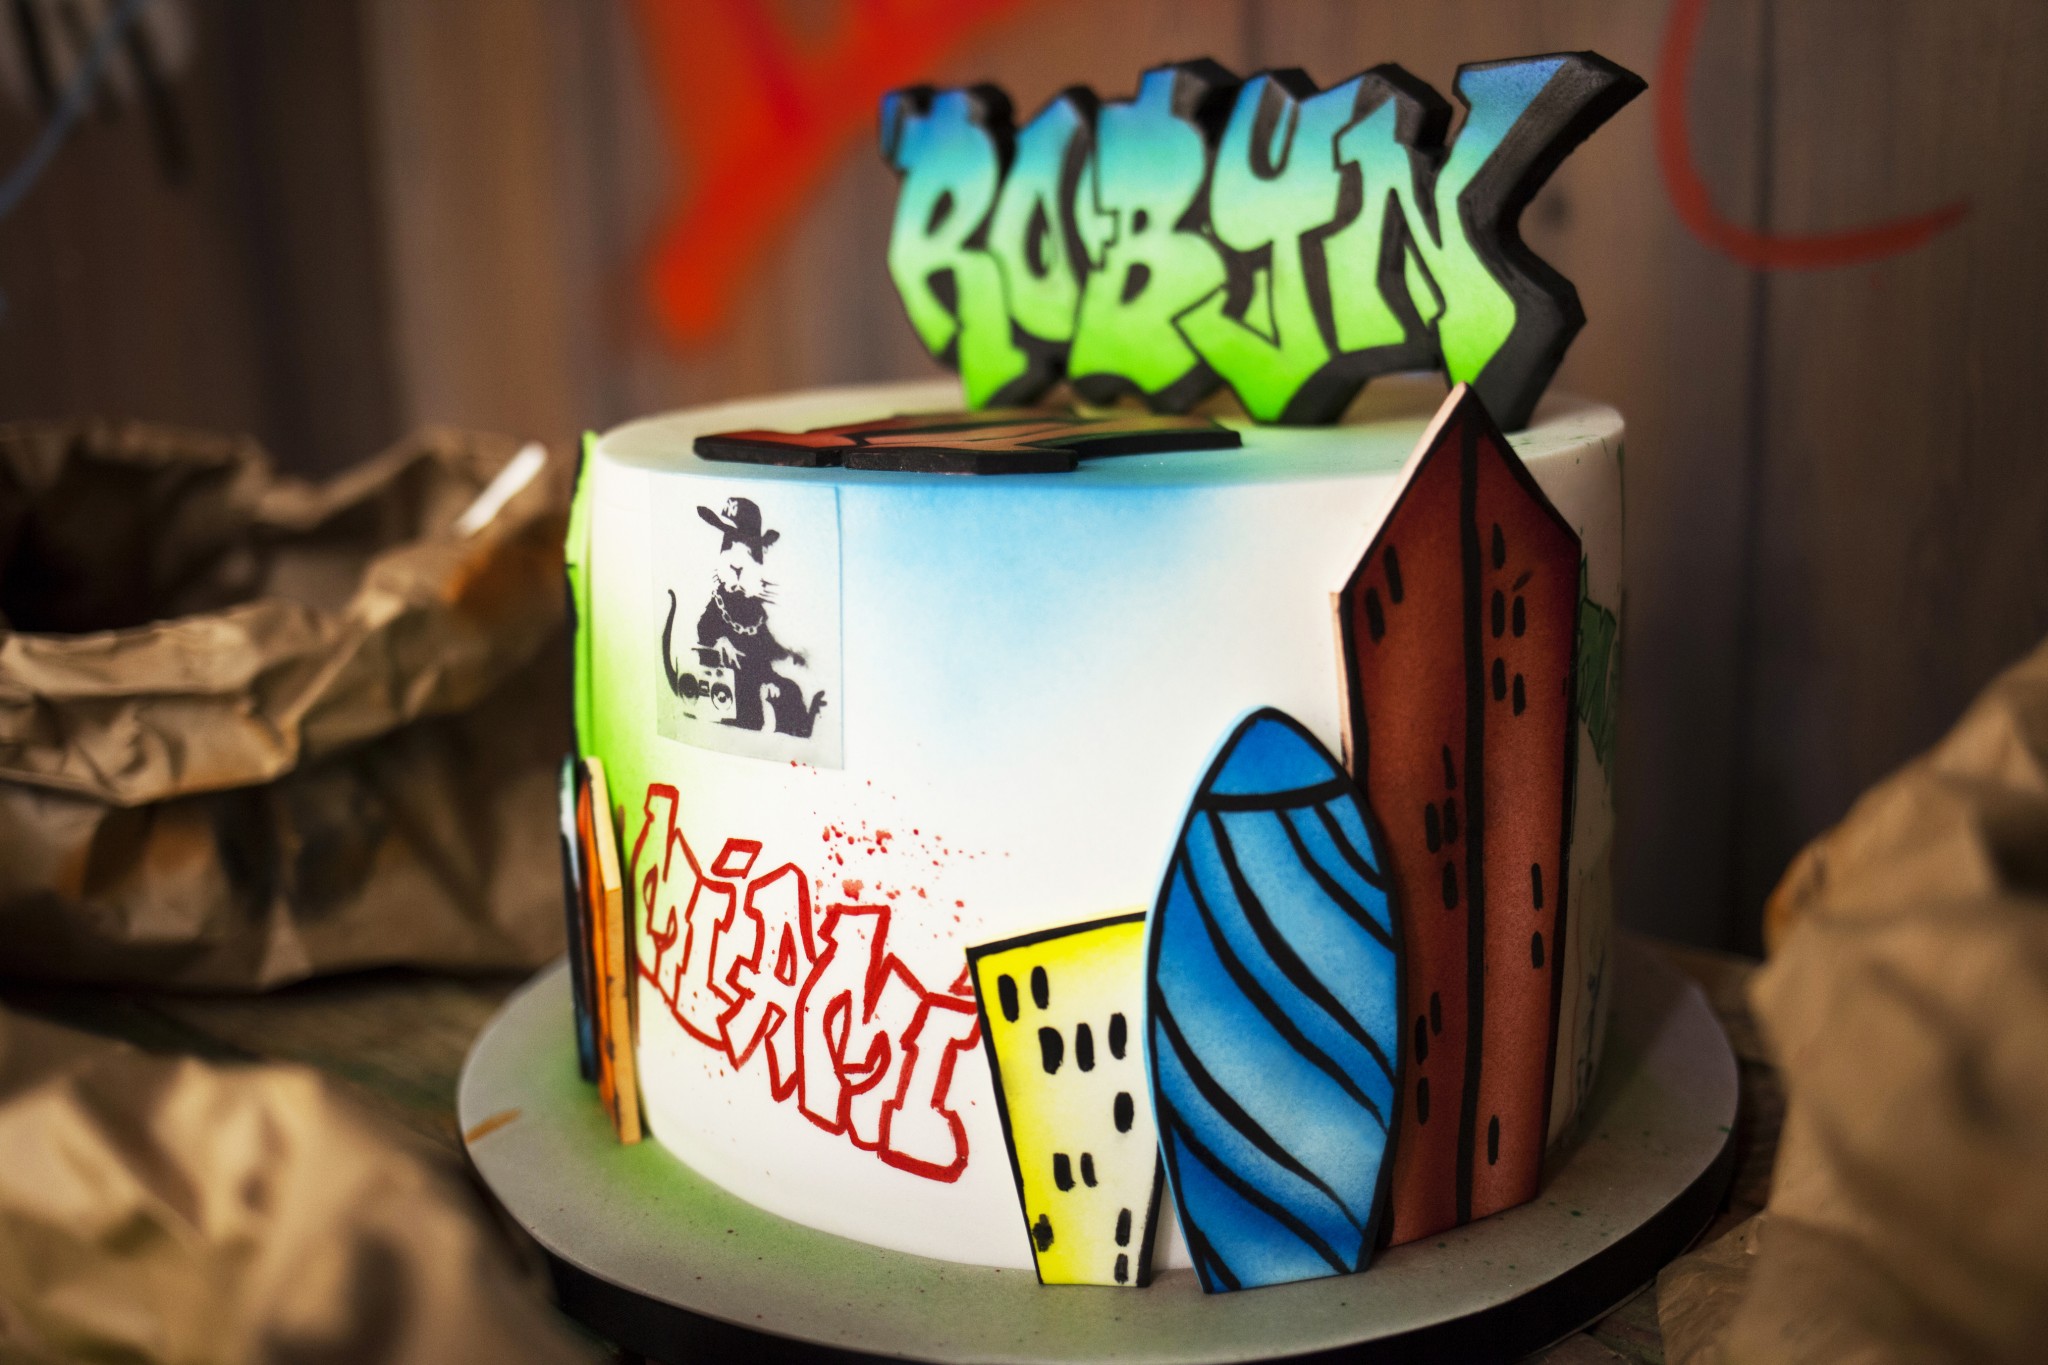 Graffiti Birthday Cake